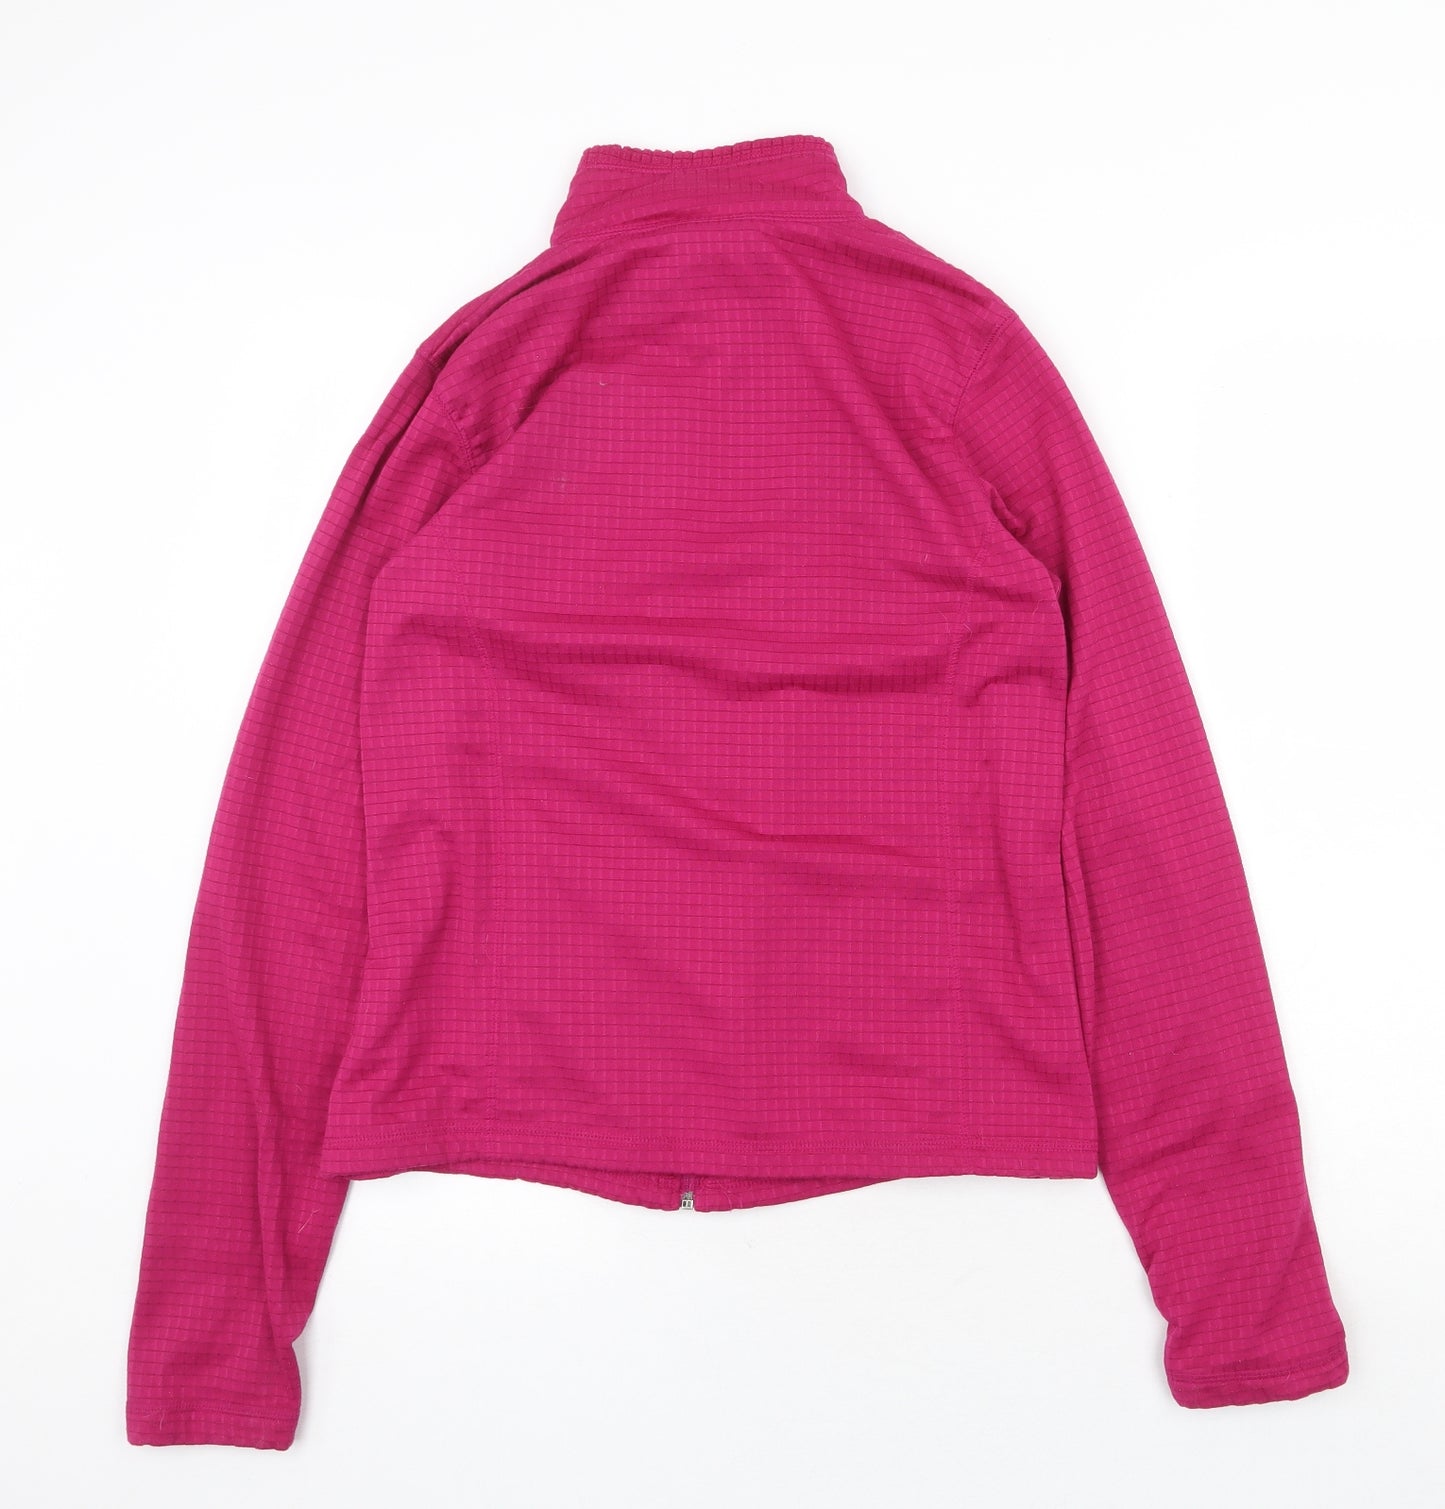 Danskin Womens Purple Geometric Jacket Size 8 Zip